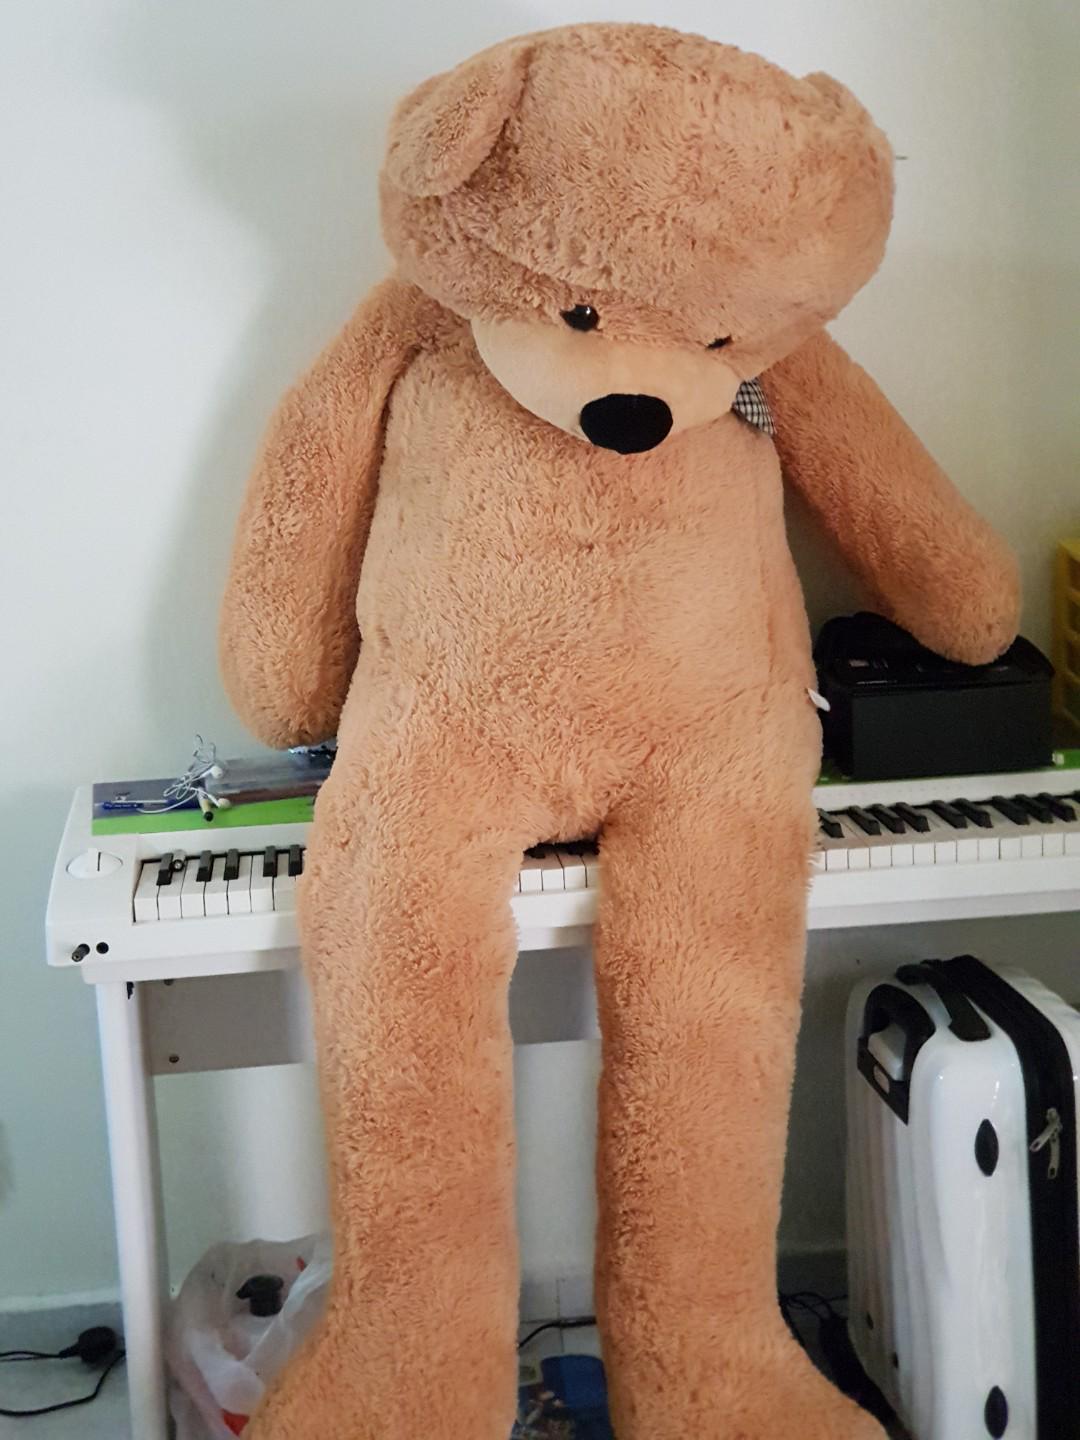 very large teddy bear